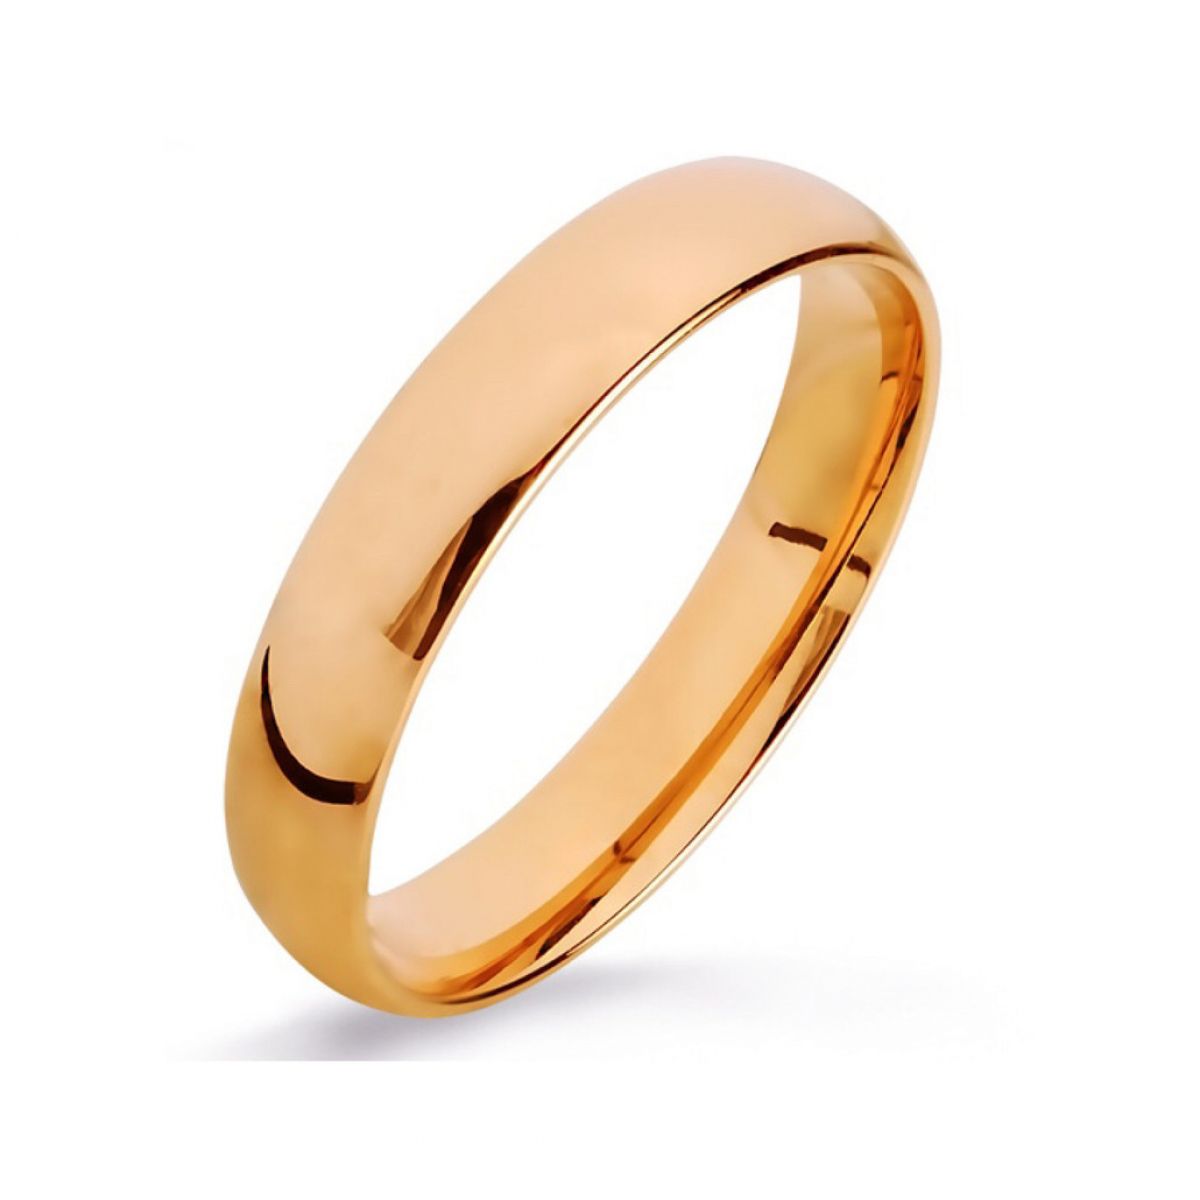 Найти золотое обручальное кольцо. Красное золото 585 обручальные кольца. Обручальные кольца золото 585. Кольцо из красного золота (арт. 100017409). Обручальные кольца из золота 585 пробы.